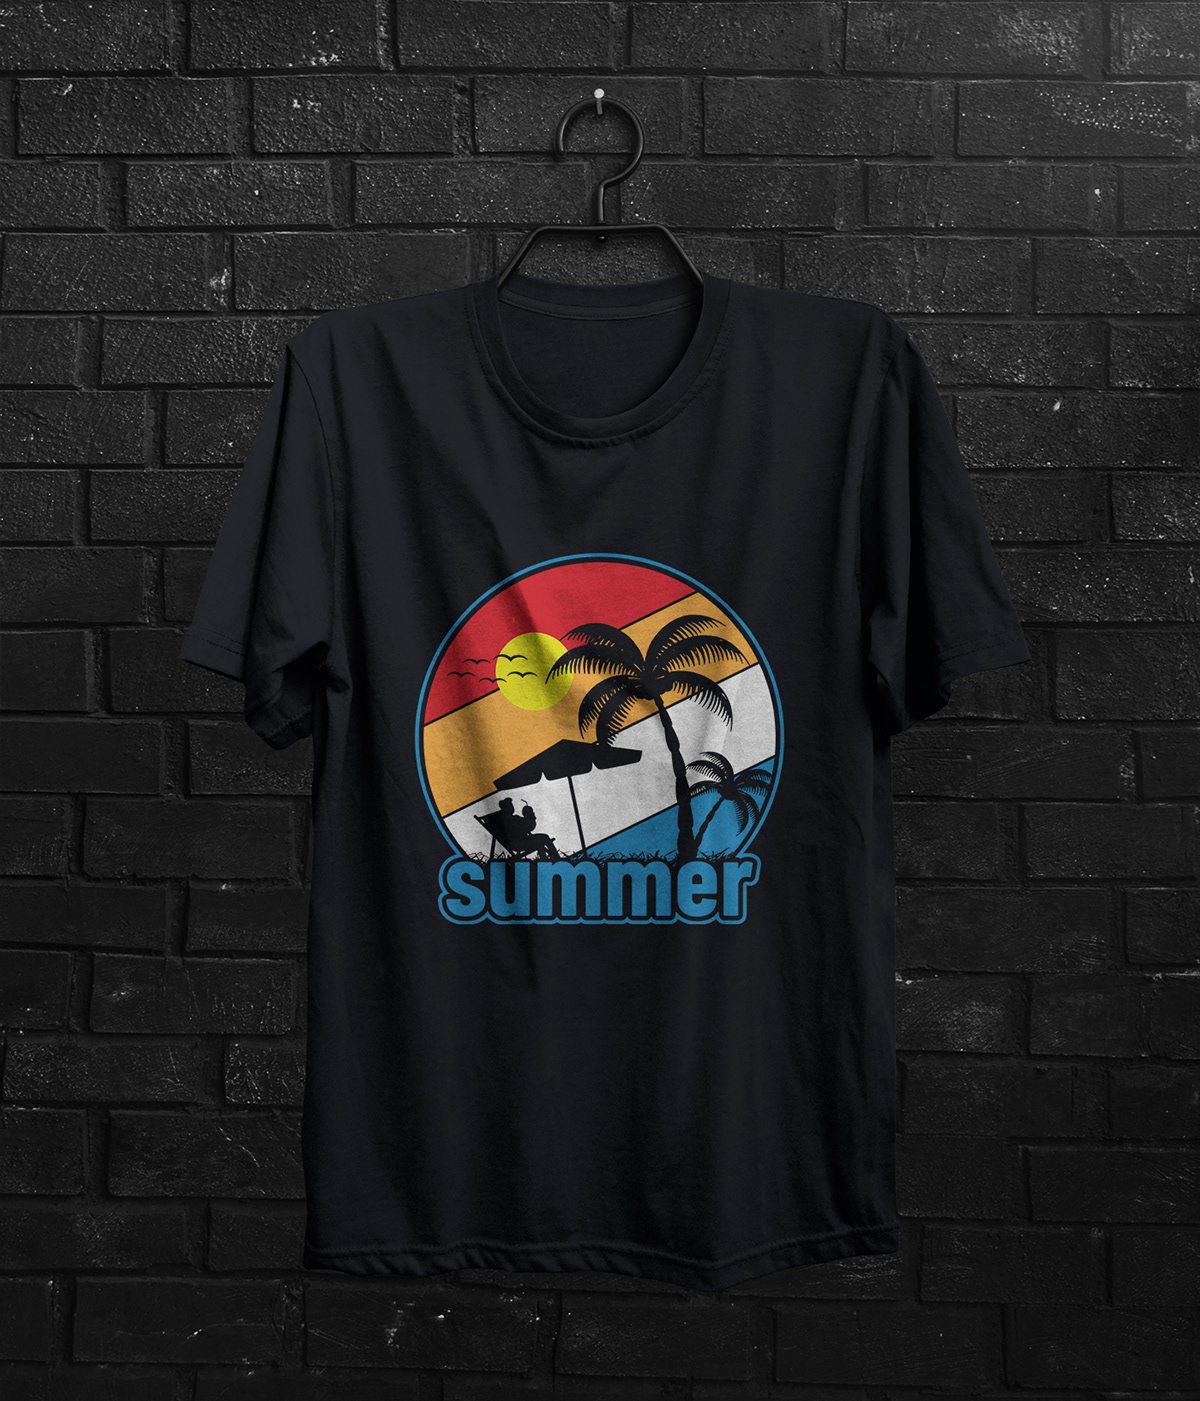 Summer T-shirt design T-Shirt Design surfing t-shirt design summer Summer T-Shirt tshirt